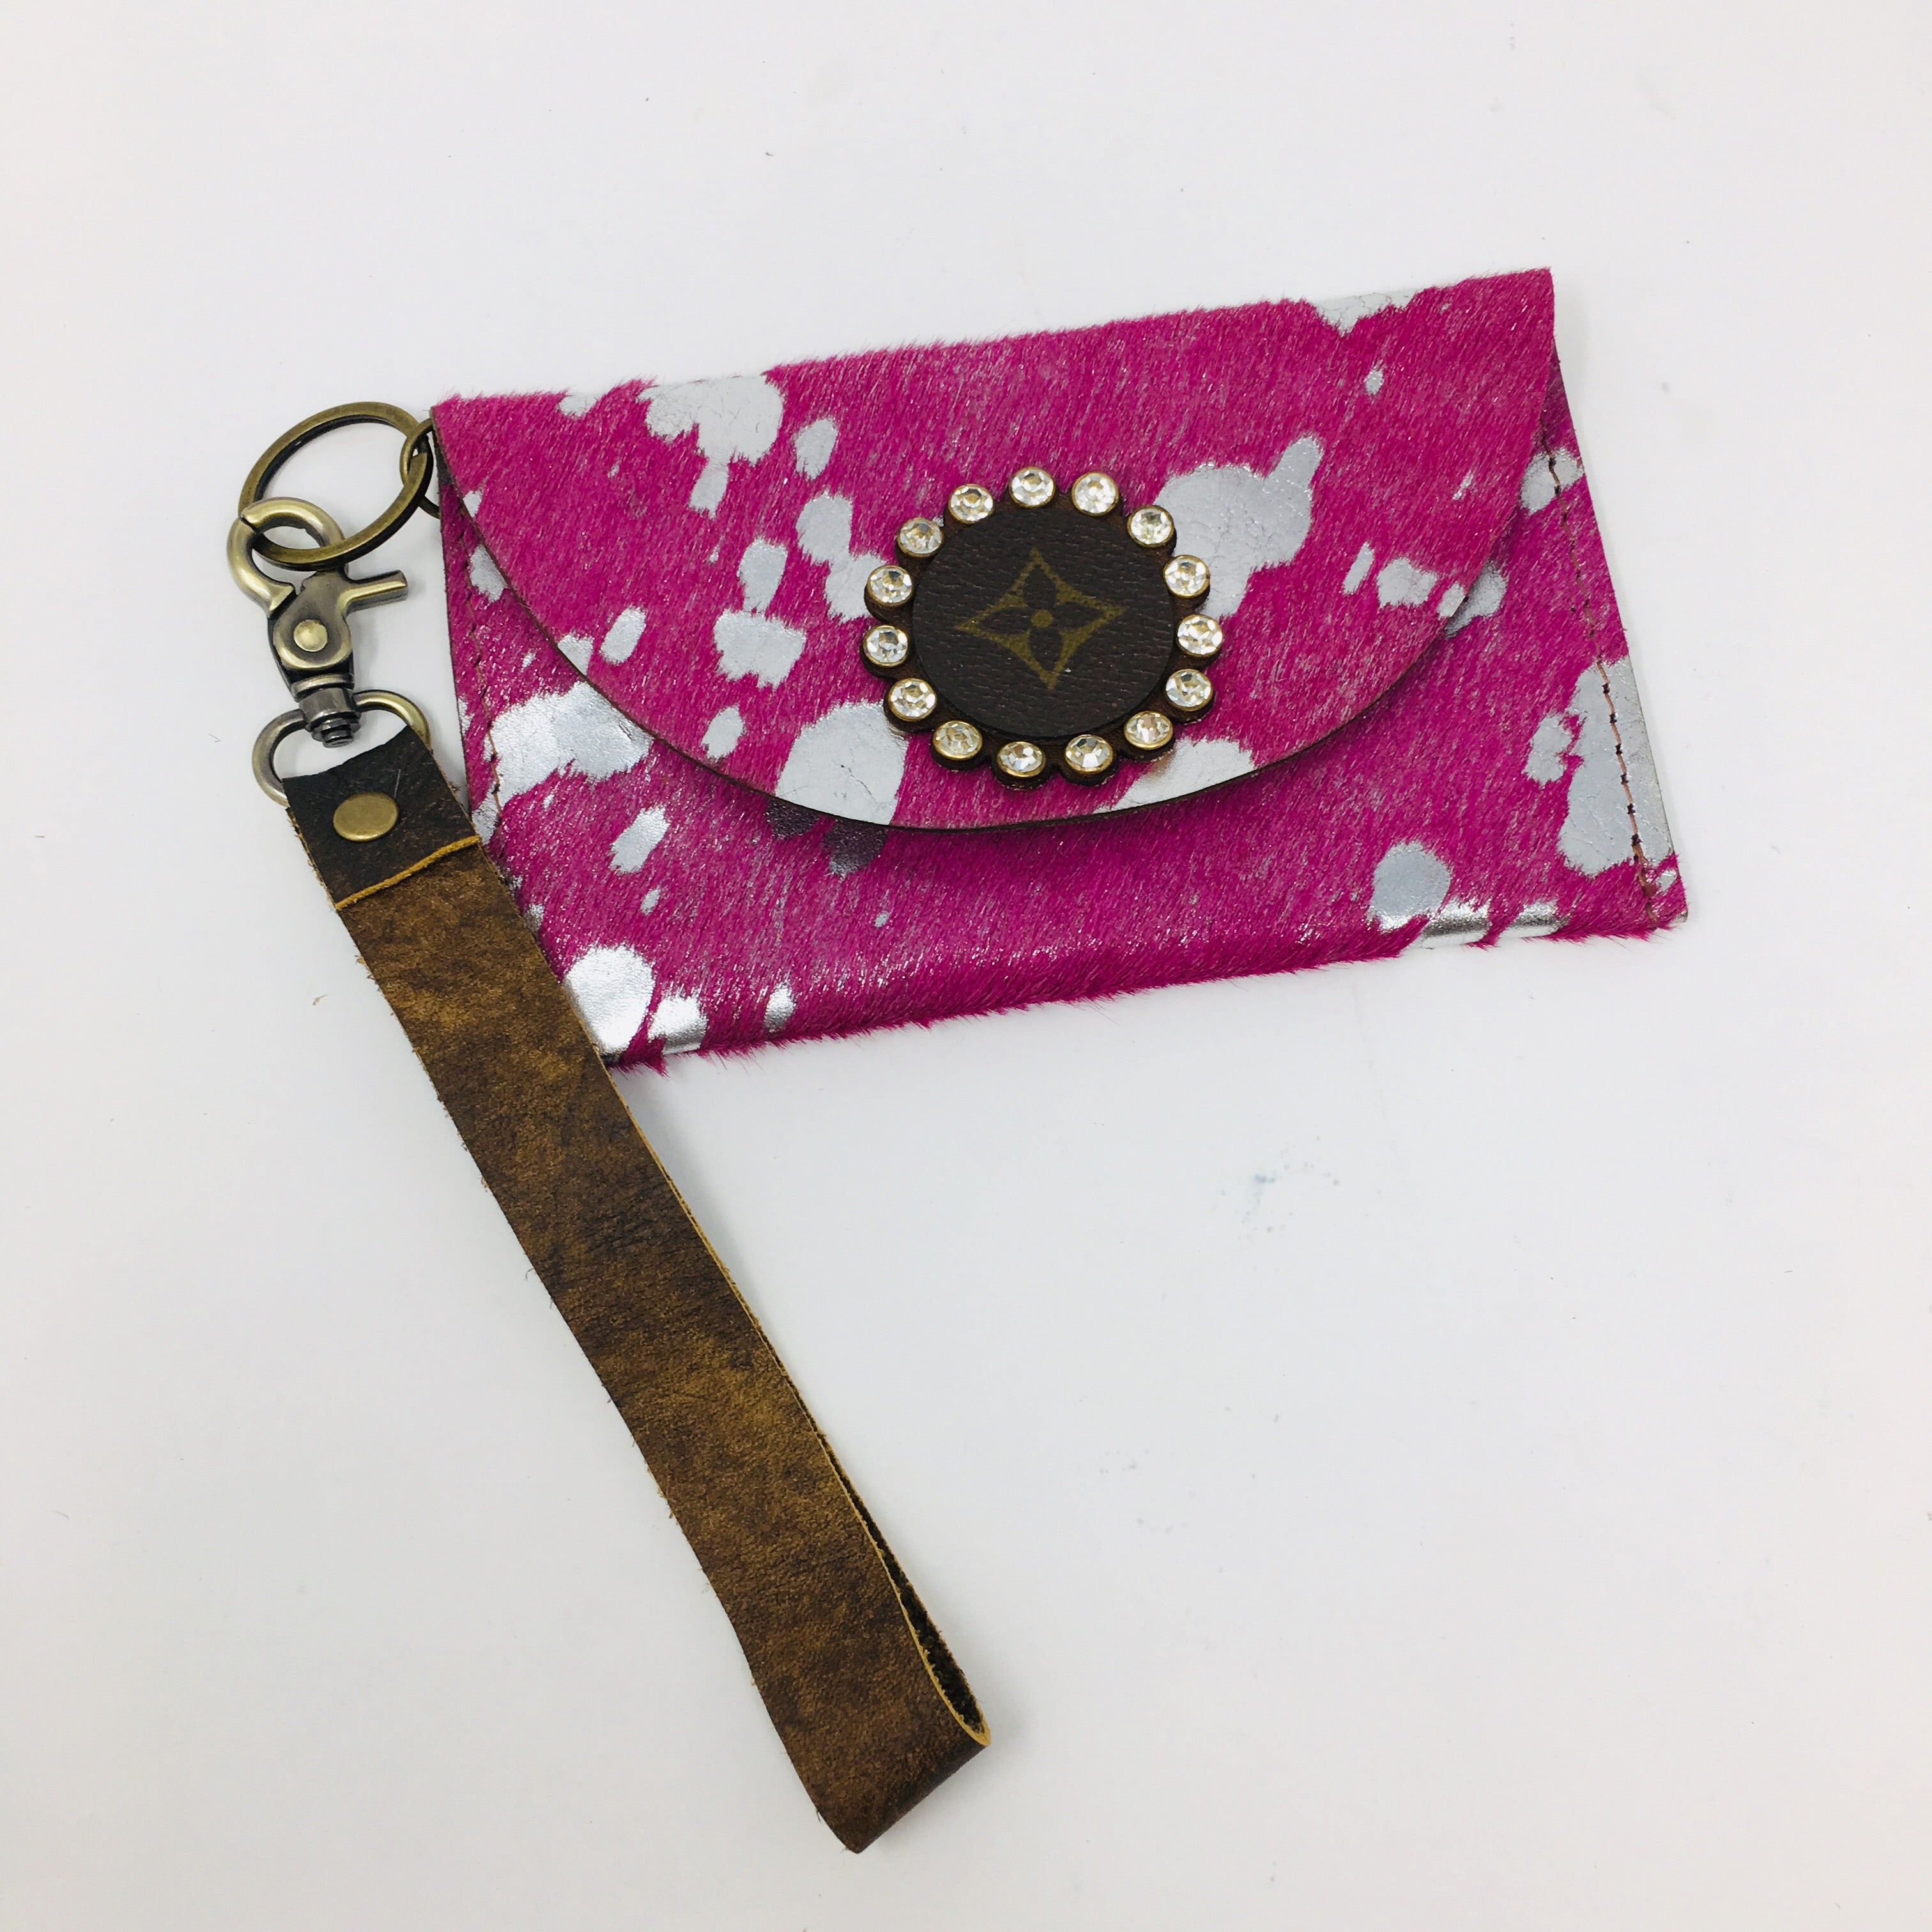 Gypsy LV Keychain Card Wallet - My Secret Garden